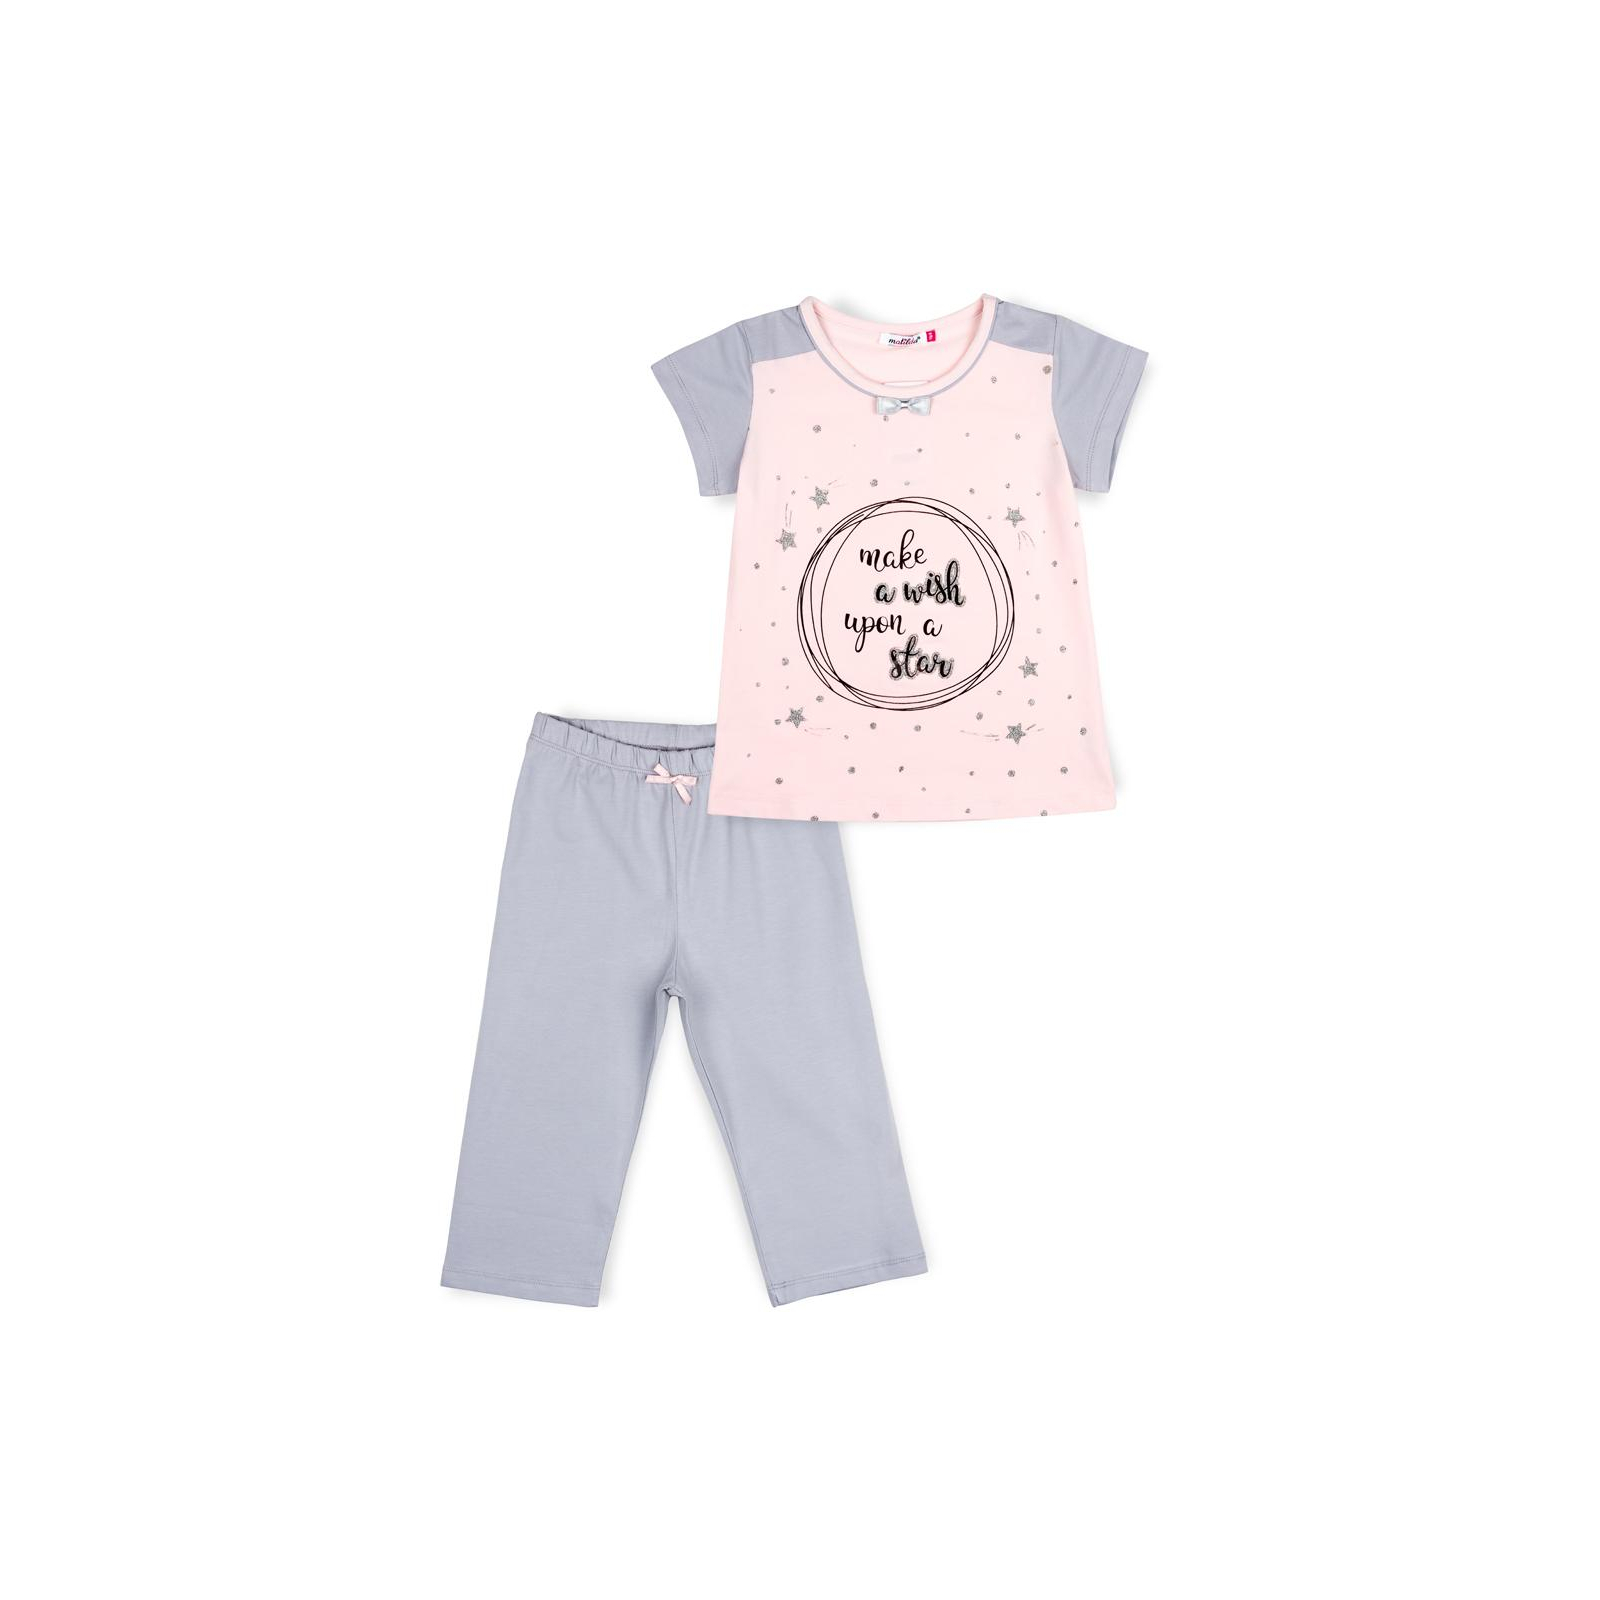 Пижама Matilda со звездочками (7991-128G-pink)